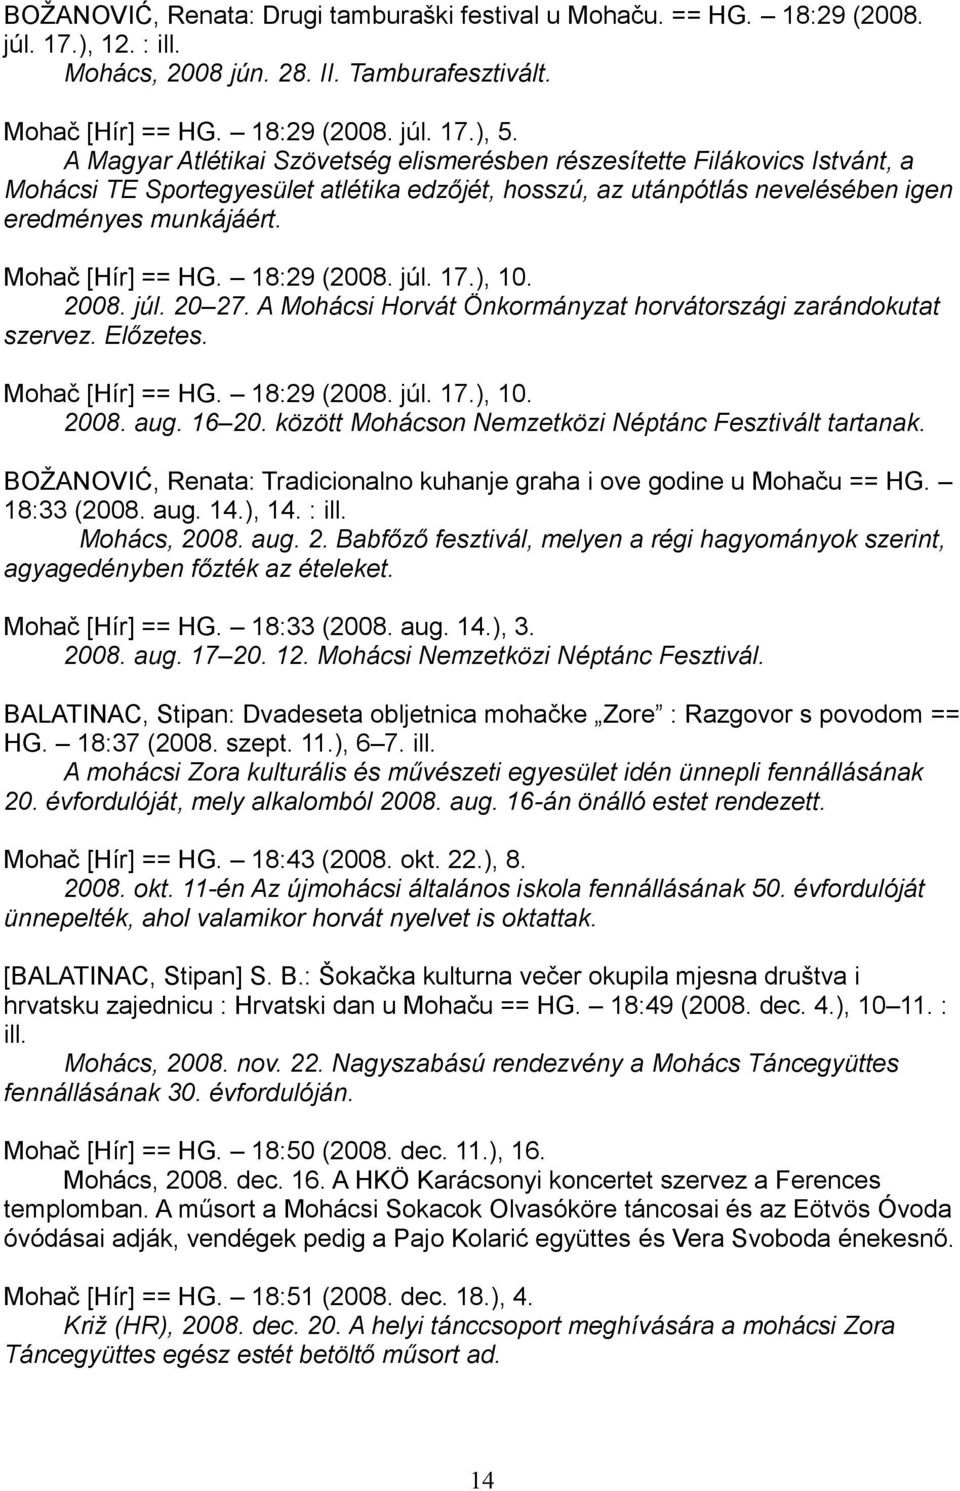 Mohač [Hír] == HG. 18:29 (2008. júl. 17.), 10. 2008. júl. 20 27. A Mohácsi Horvát Önkormányzat horvátországi zarándokutat szervez. Előzetes. Mohač [Hír] == HG. 18:29 (2008. júl. 17.), 10. 2008. aug.